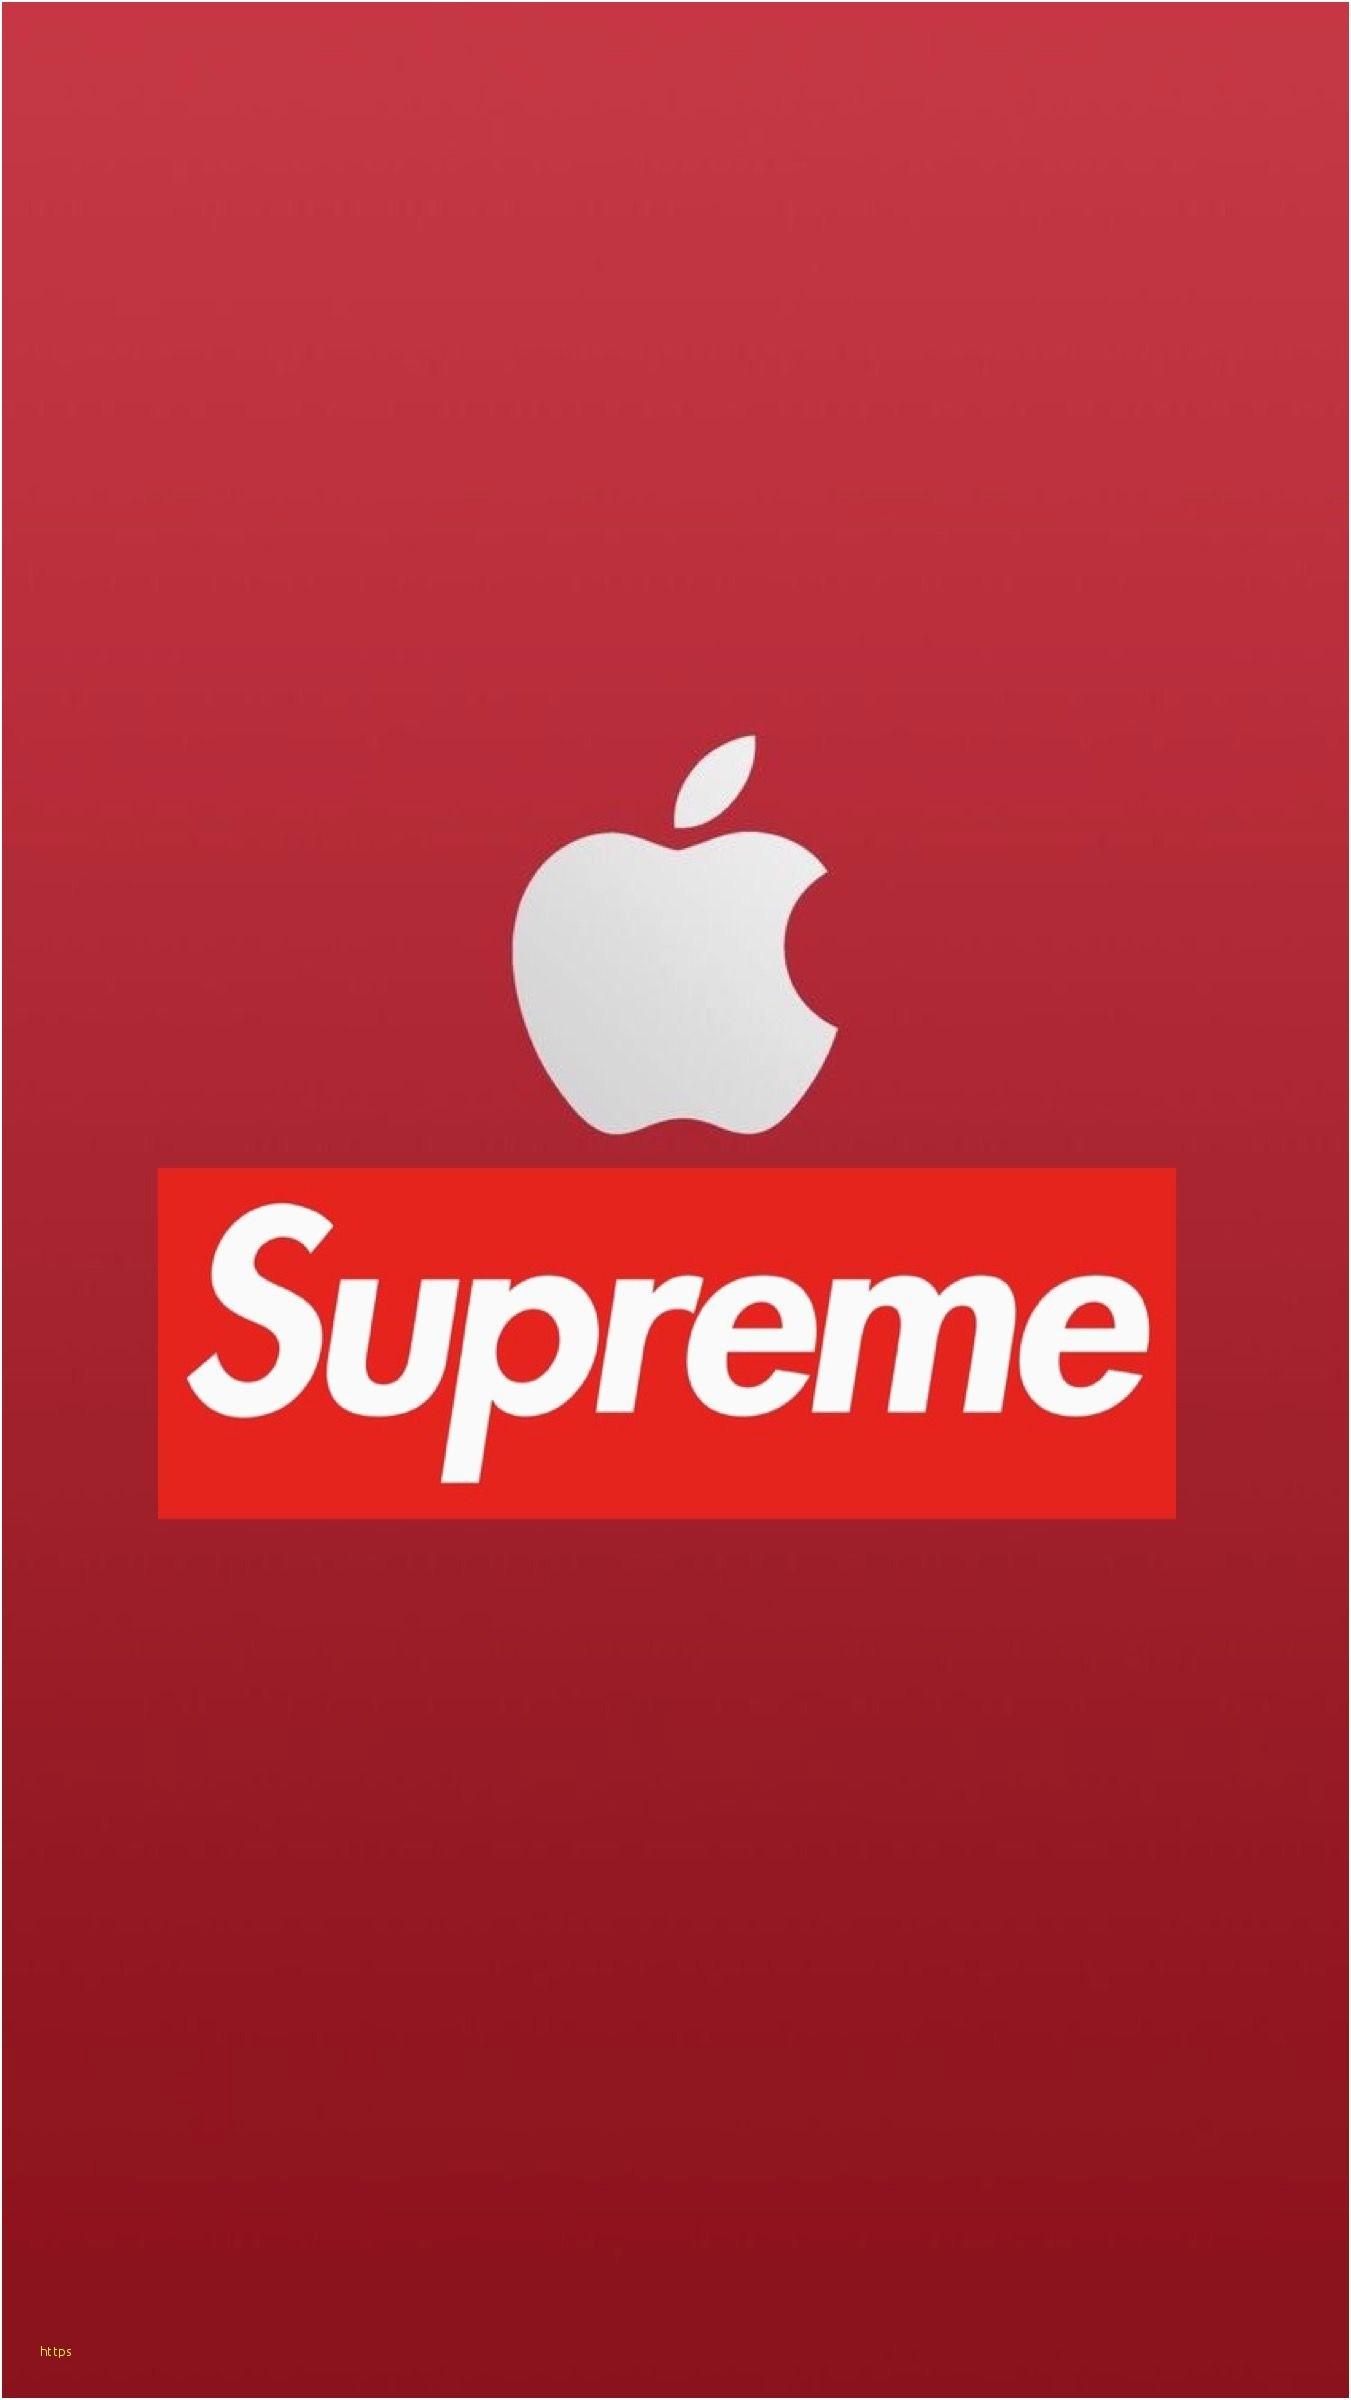 jordan x supreme logo